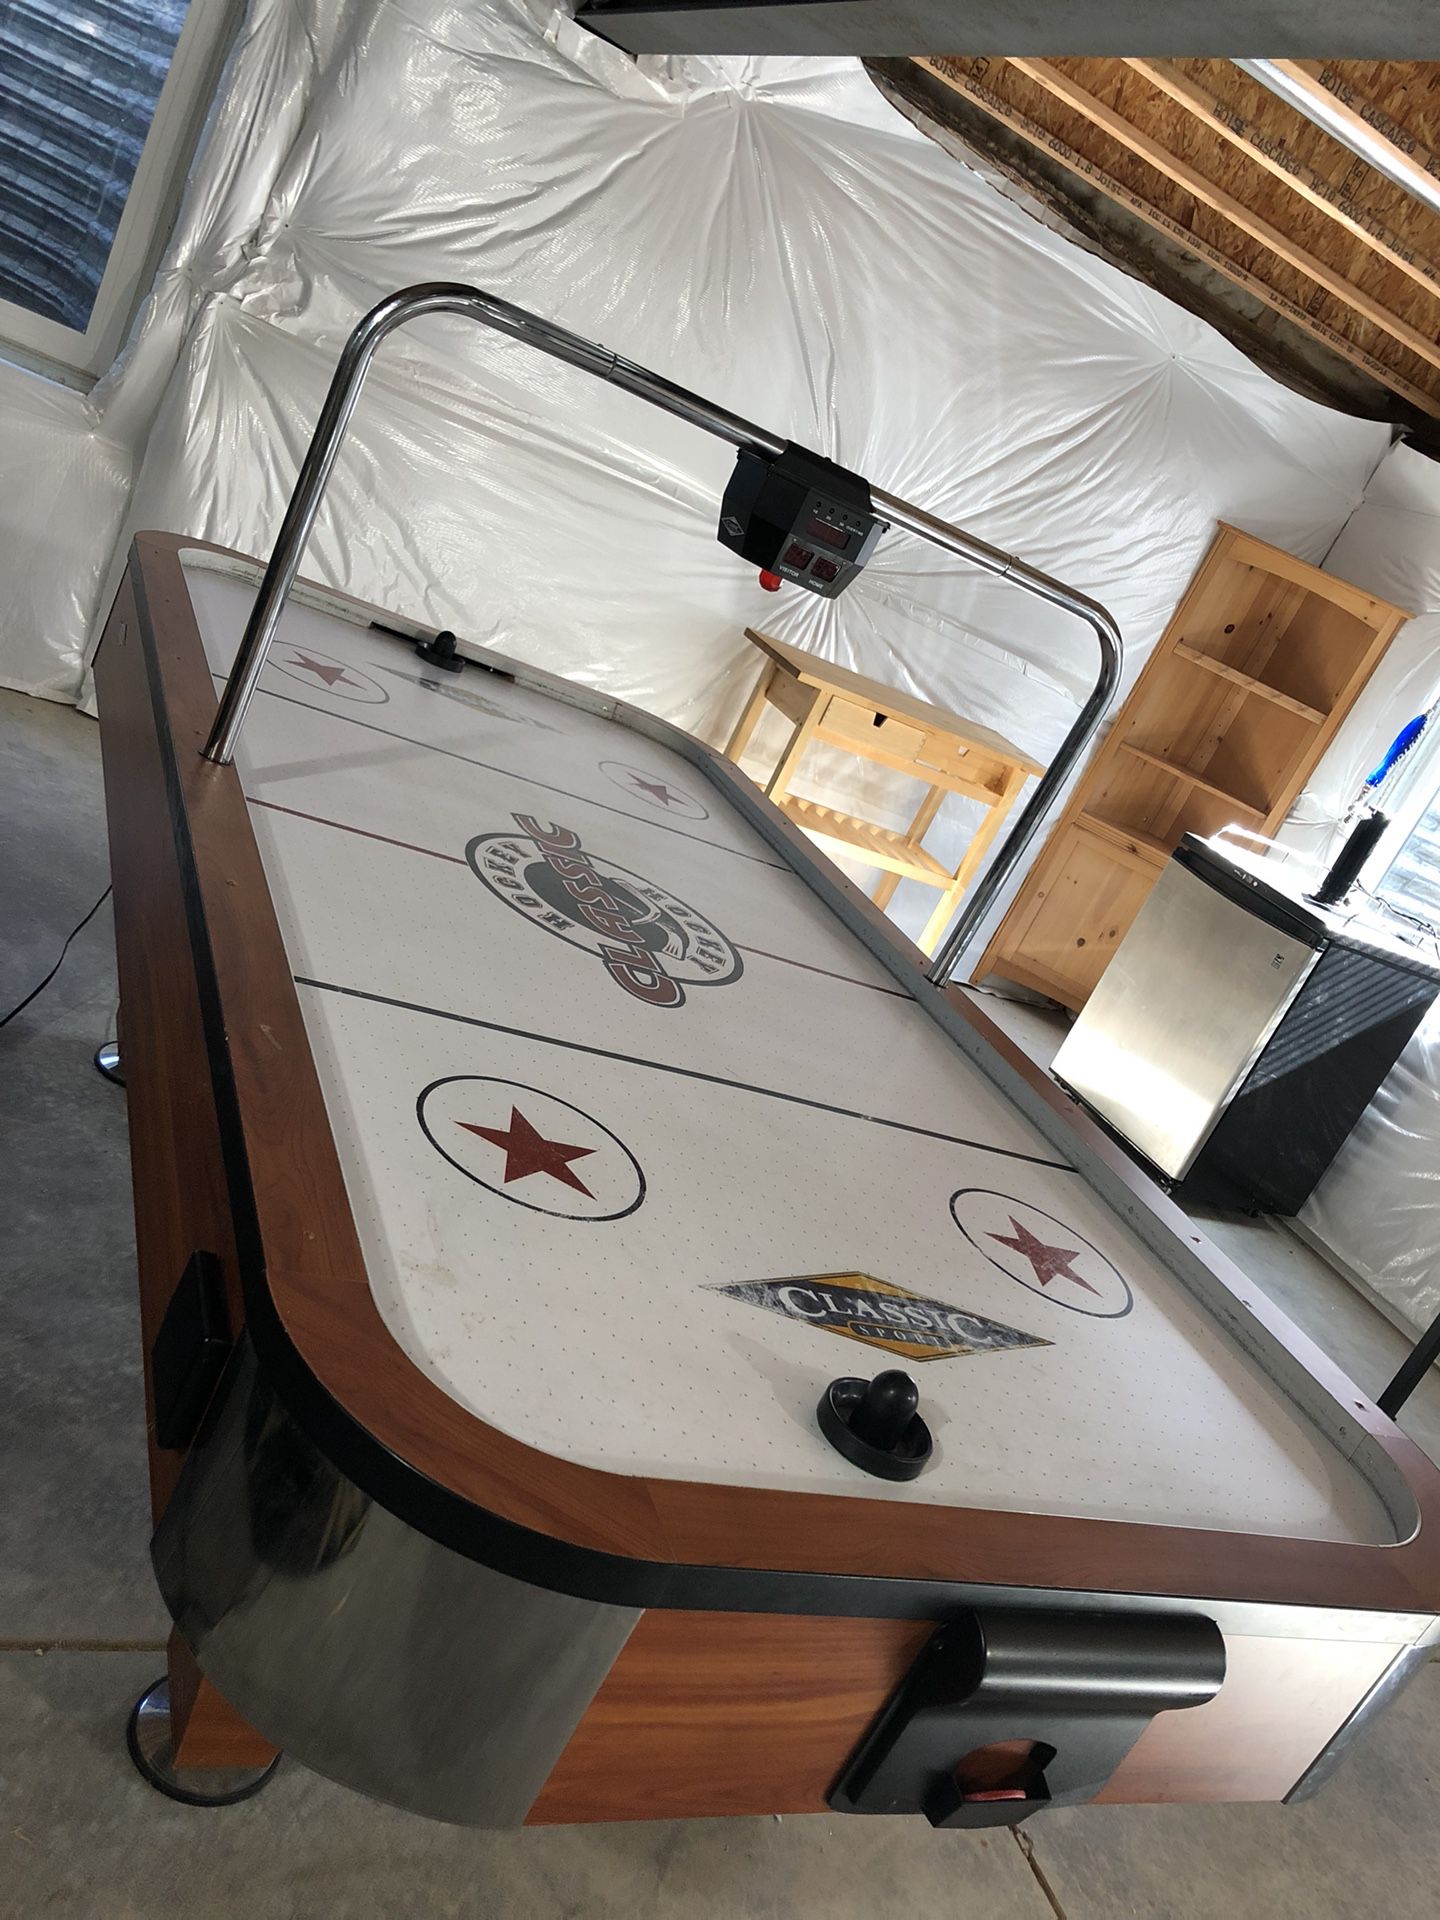 Powered Air Hockey Table